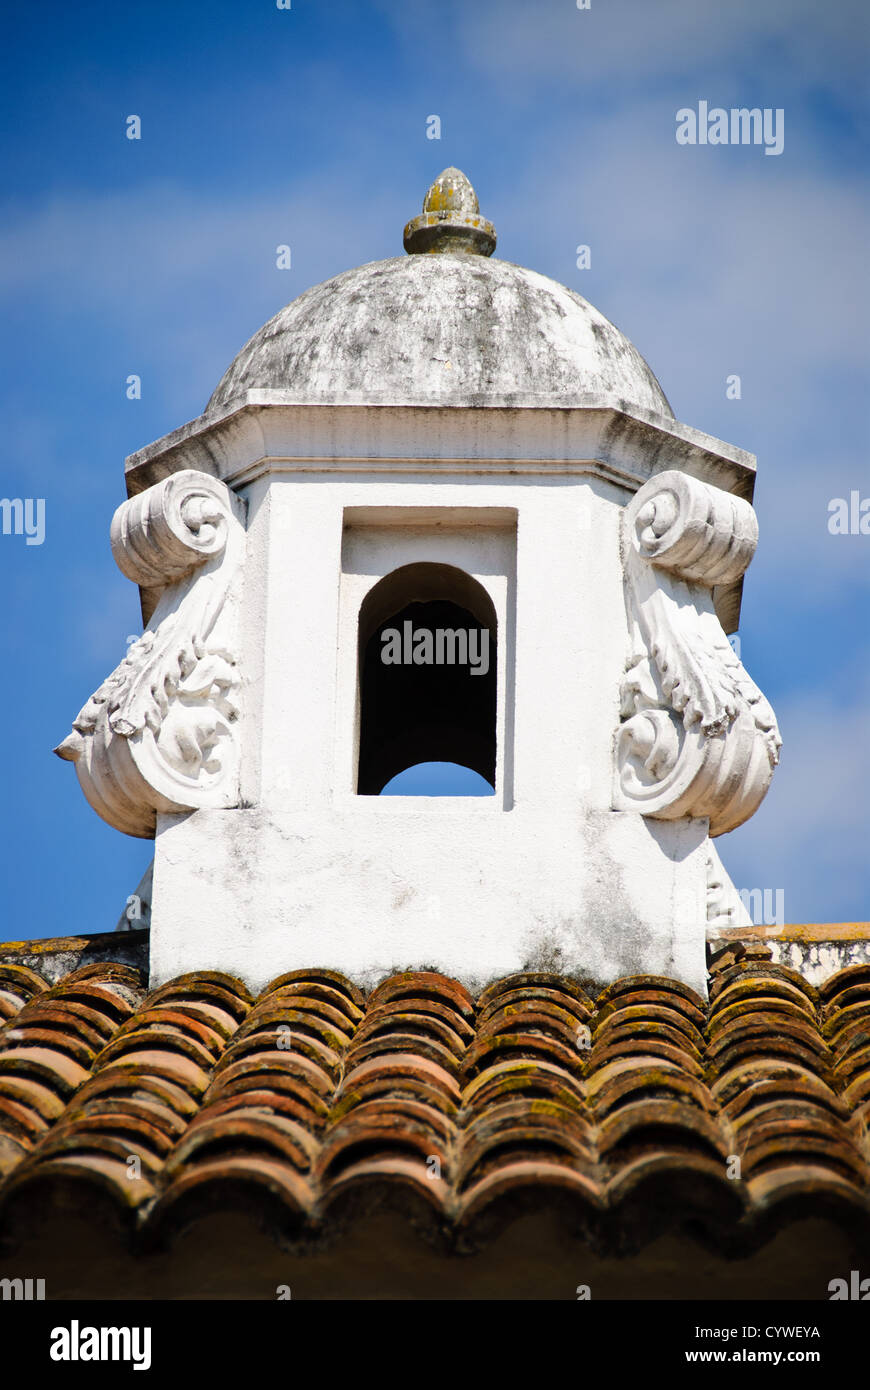 Spanische Kolonialzeit Schornstein auf einem Dach in Antigua Guatemala. Berühmt für seine gut erhaltene spanische barocke Architektur sowie eine Reihe von Ruinen von Erdbeben, Antigua Guatemala ist ein UNESCO-Weltkulturerbe und ehemalige Hauptstadt von Guatemala. Stockfoto